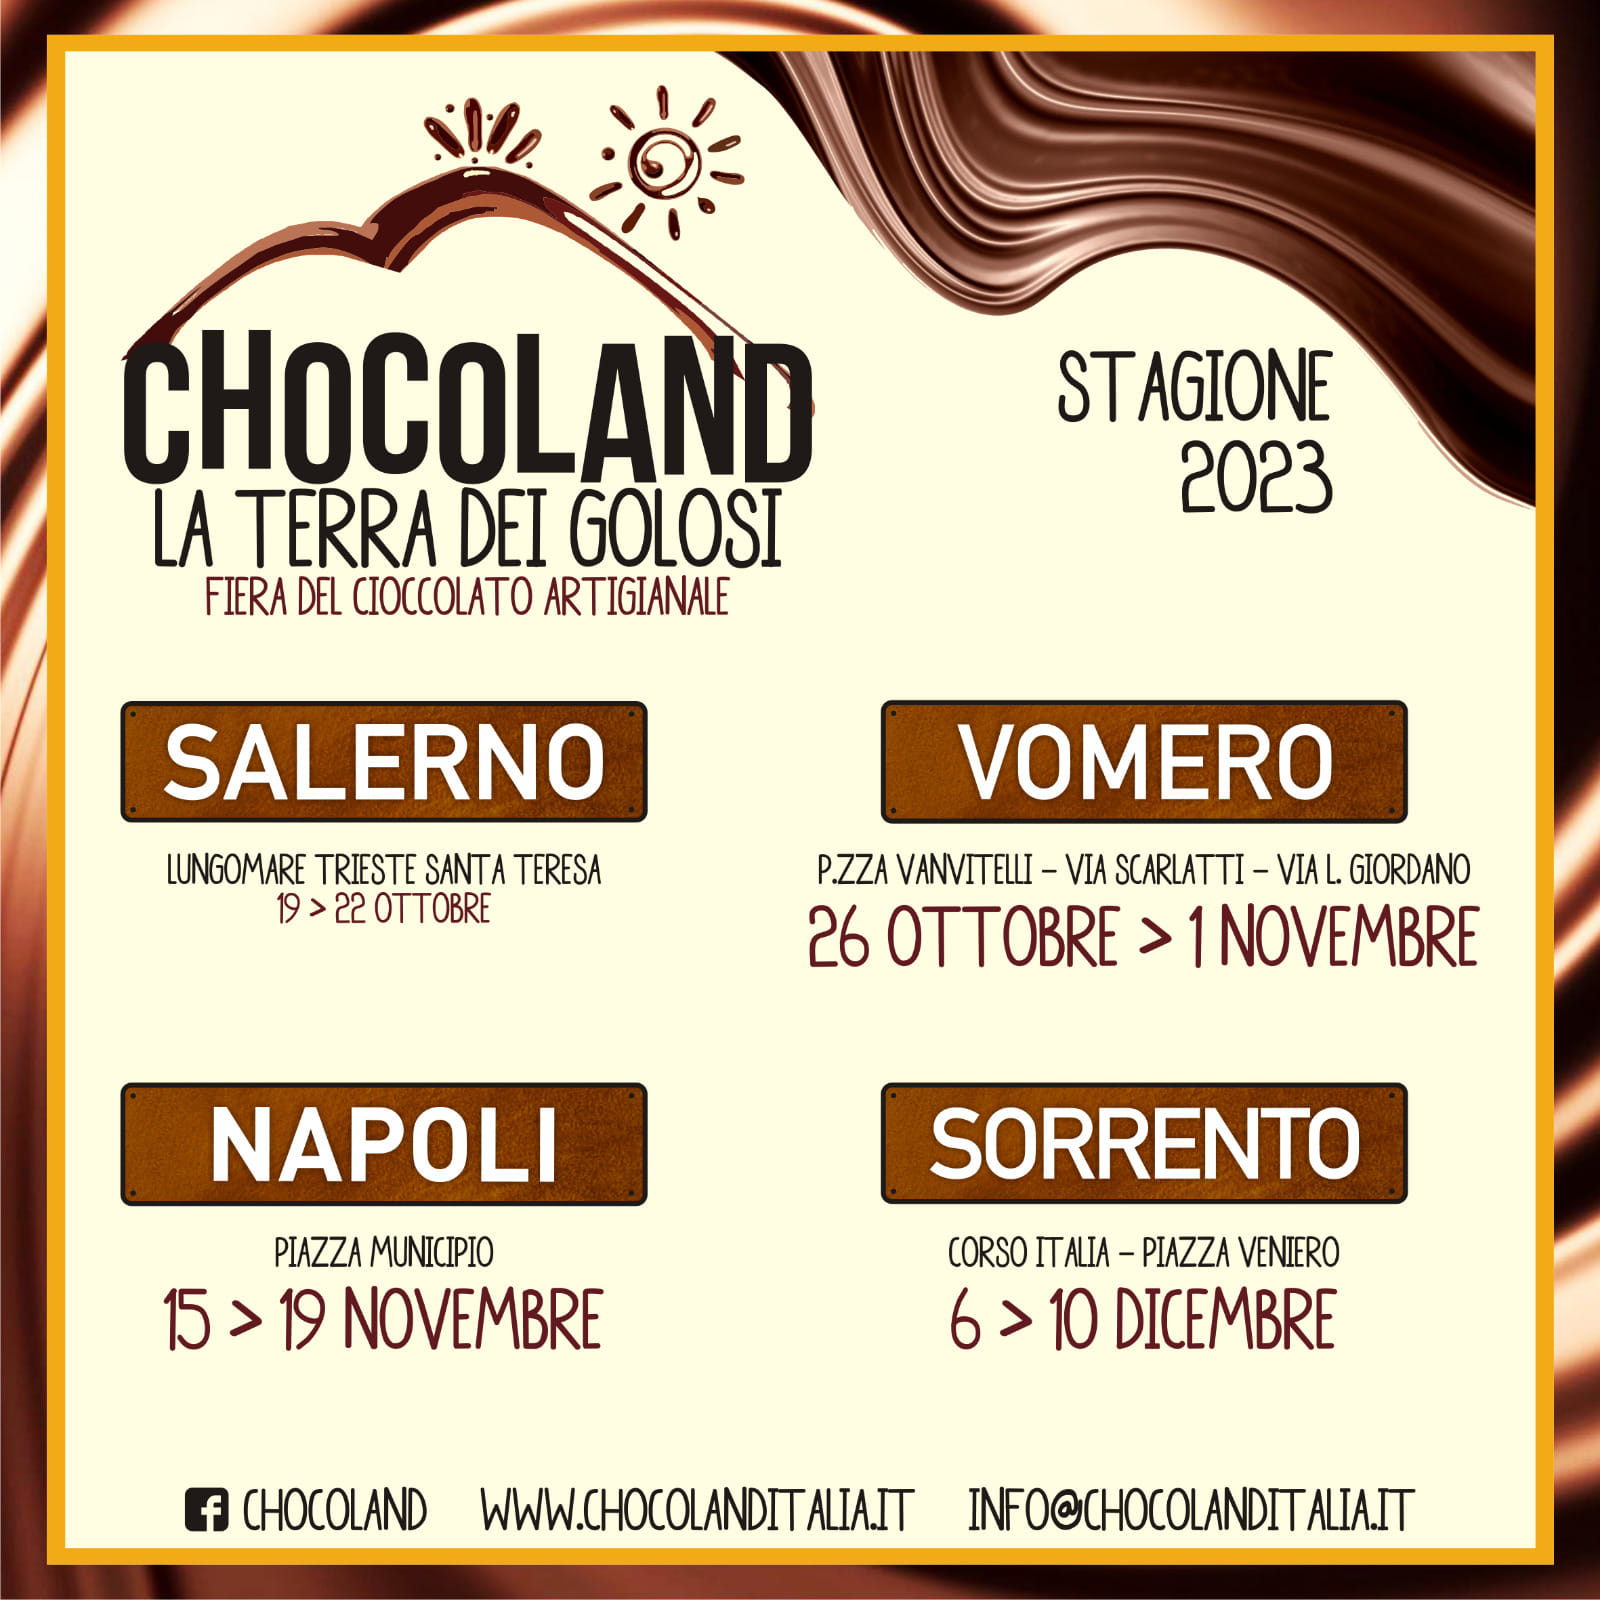 Chocoland, l'evento tanto atteso, torna a Napoli e dopo il quartiere Vomero arriva in piazza Municipio. 